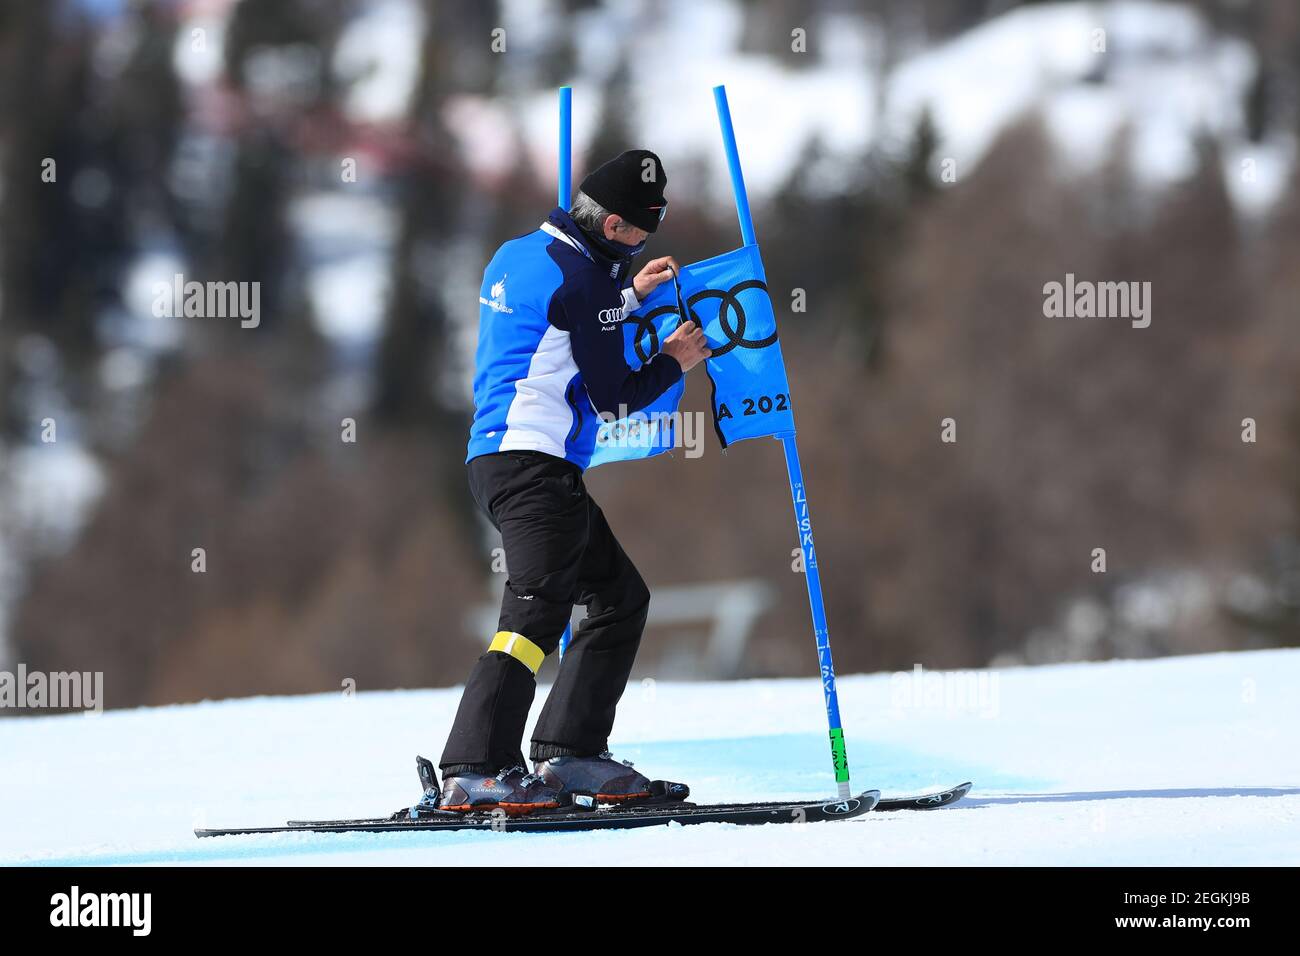 18 de febrero de 2021; Cortina d'Ampezzo, Italia; FIS Campeonato Mundial de esquí alpino Cortina Femenino Gigante Slalom; curso de licitación reparaciones puerta Foto de stock